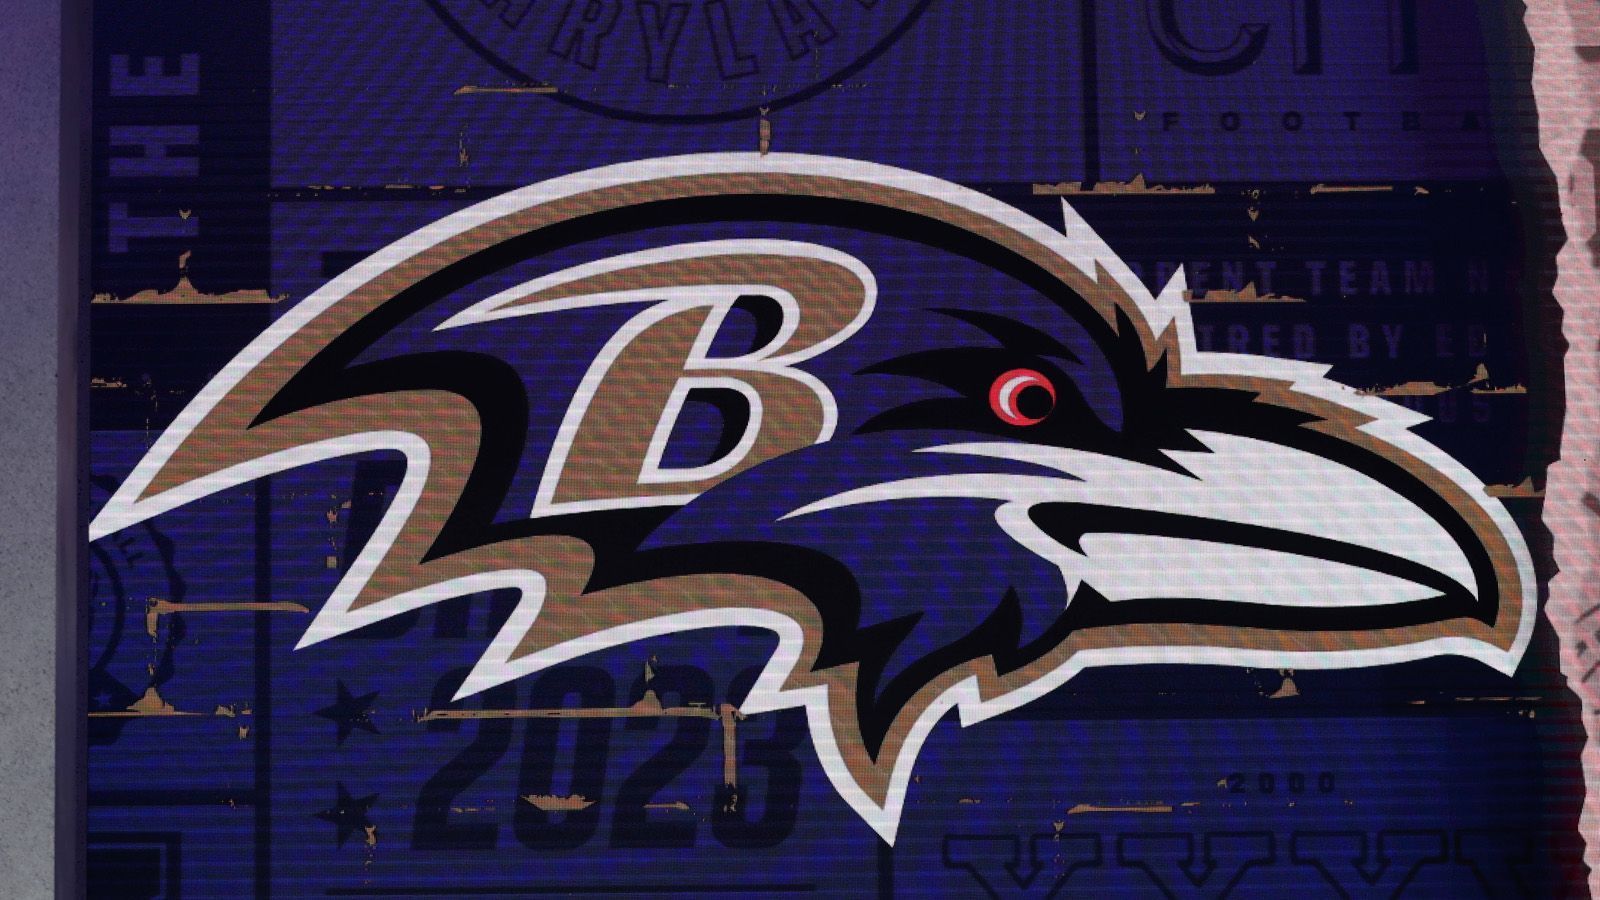 <strong>Baltimore Ravens</strong><br>
                kein Retired Jersey<br><em>Kandidaten gäbe es hier eigentlich genug. Ray Lewis und seine 52 beispielsweise.</em>